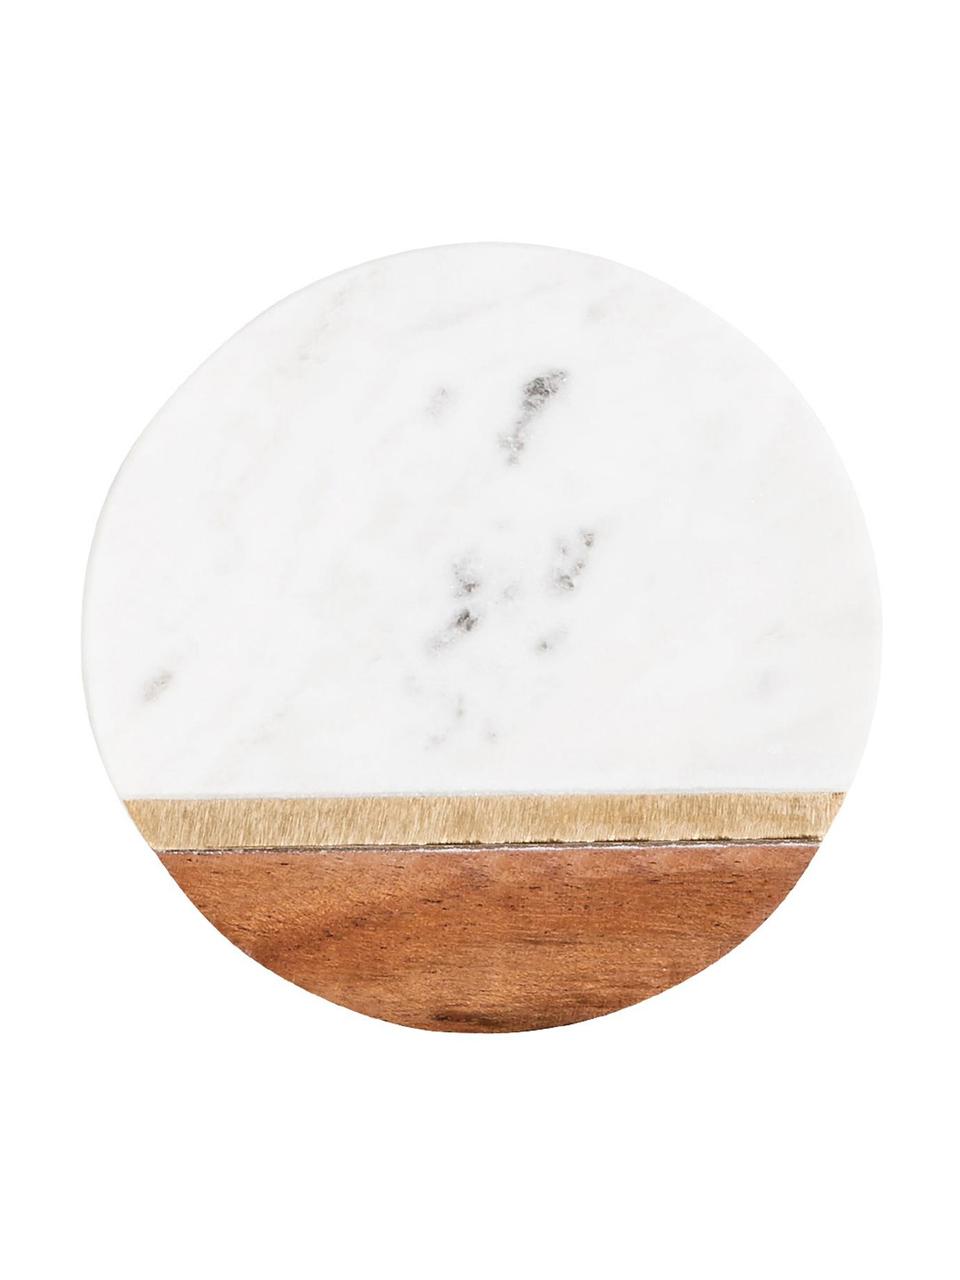 Sottobicchiere in marmo Luxory Kitchen 4 pz, Marmo, legno d'acacia, ottone, Bianco, marmorizzato, legno d'acacia, dorato, Ø 10 x Alt. 2 cm